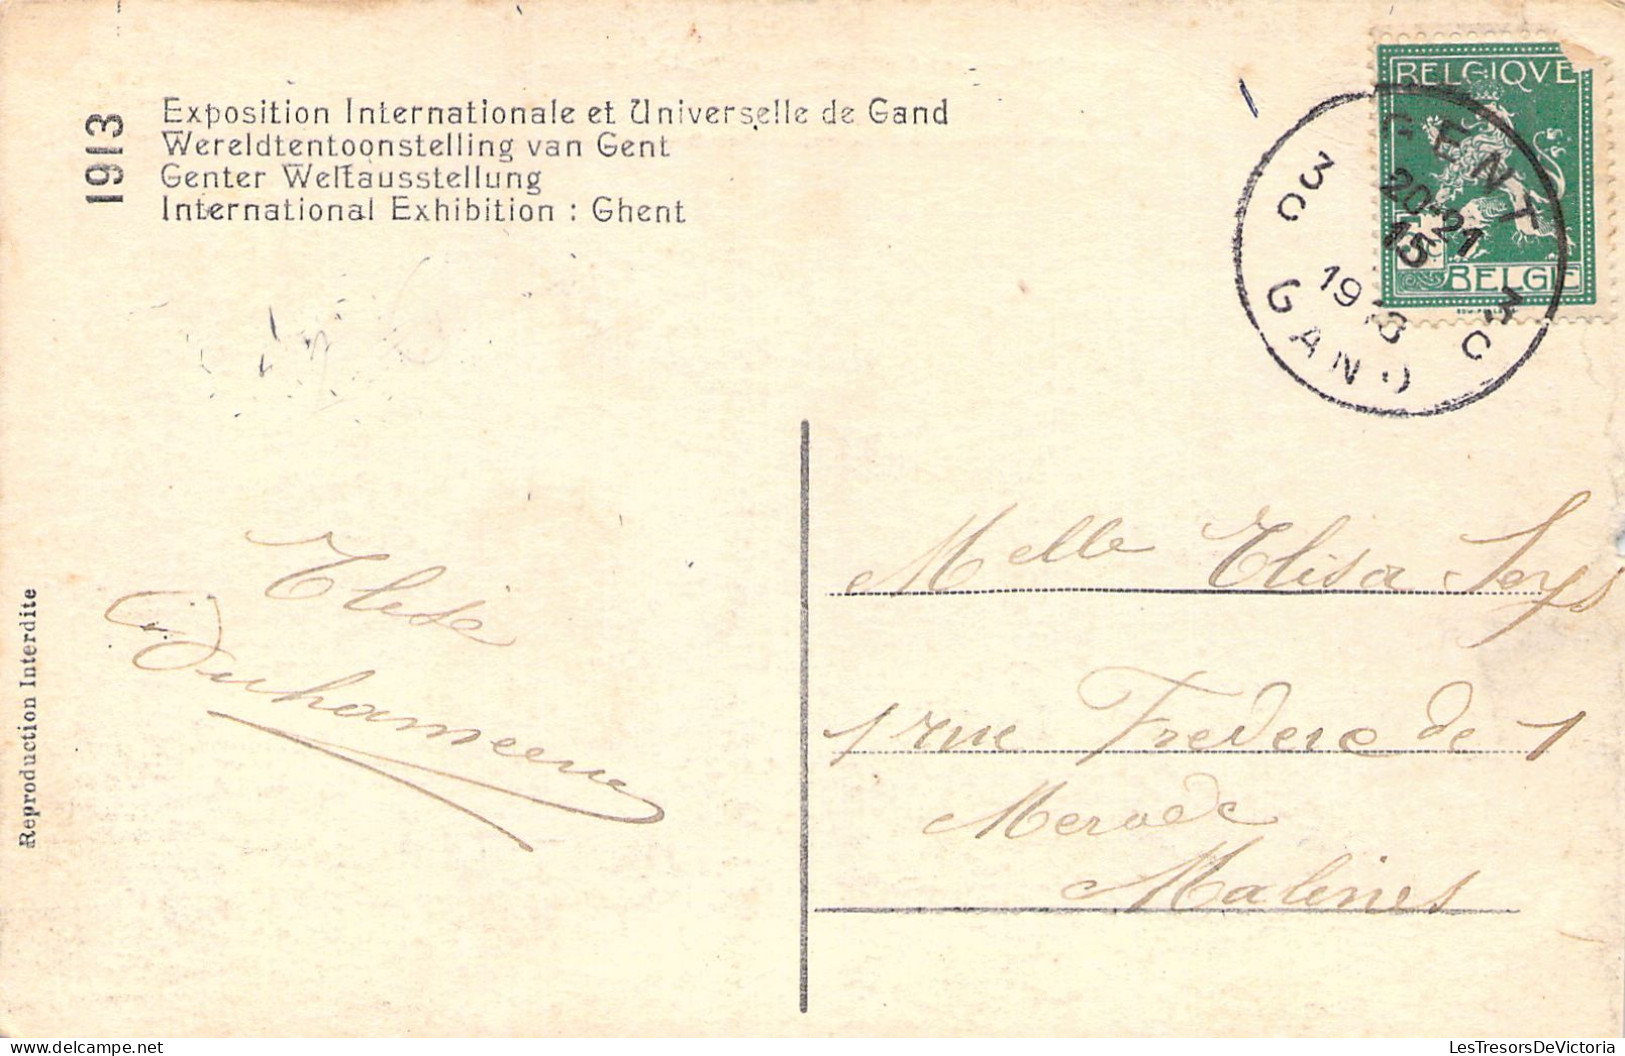 BELGIQUE - GAND - GENT - Exposition Universelle 1913 - La Cour D'honneur  - Carte Postale Ancienne - Gent